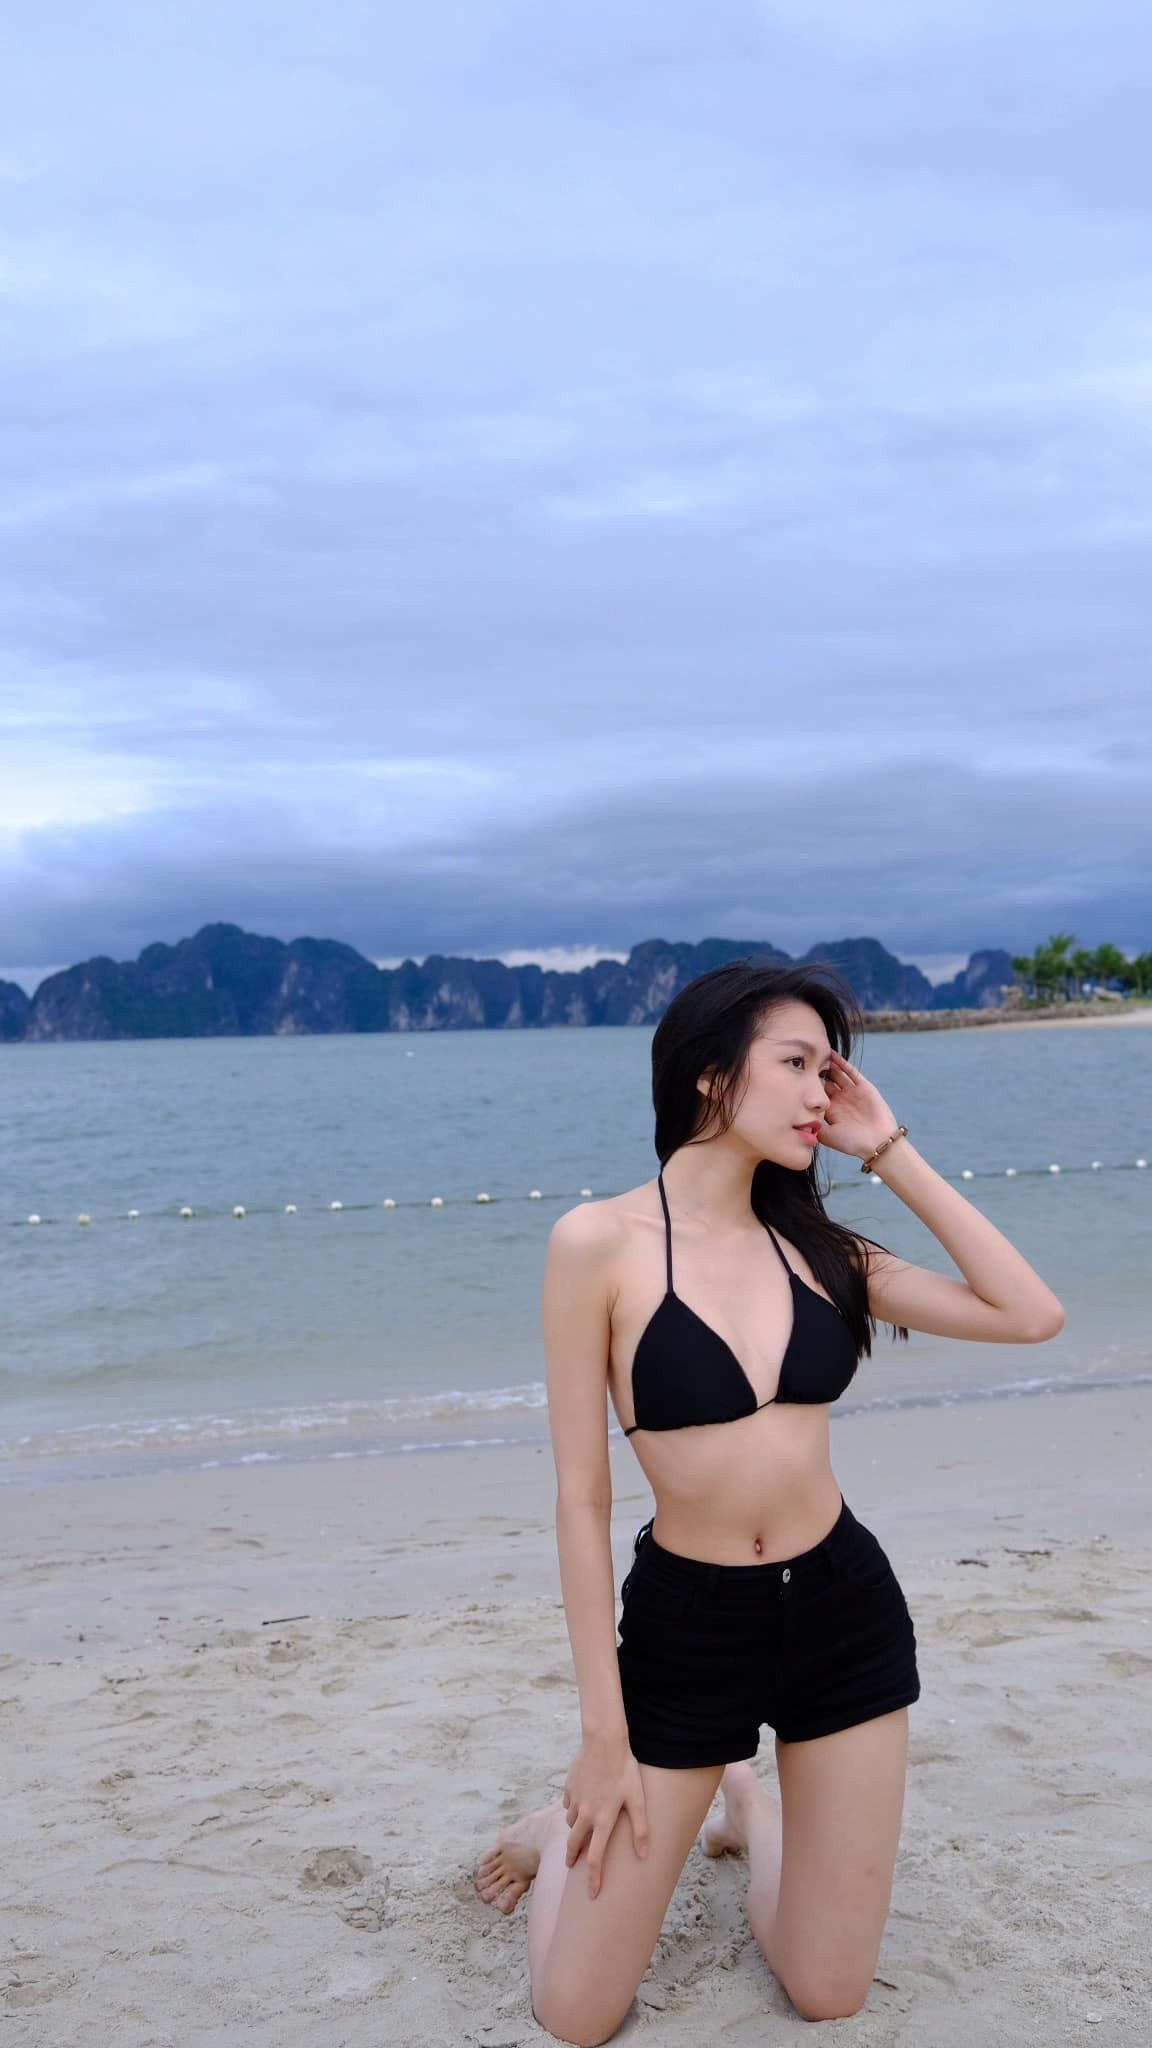 Nhan sắc bạn gái xinh đẹp từng lọt top 10 Hoa hậu Việt Nam của Đoàn Văn Hậu - 5